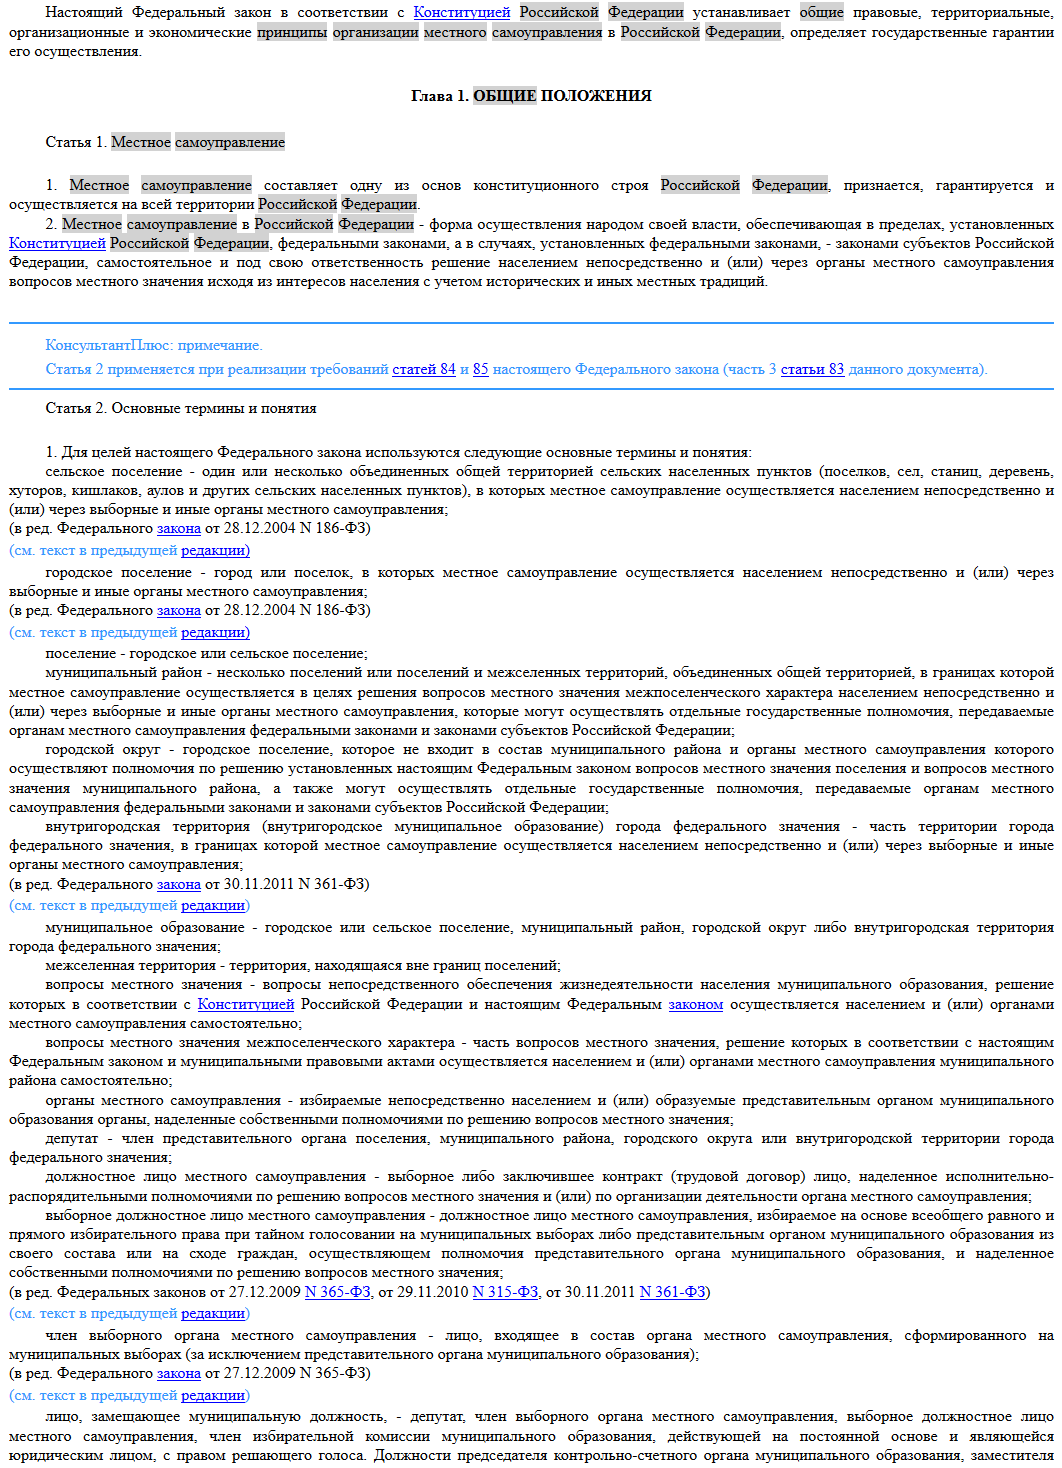 Об общих принципах организации местного самоуправления в Российской Федерации